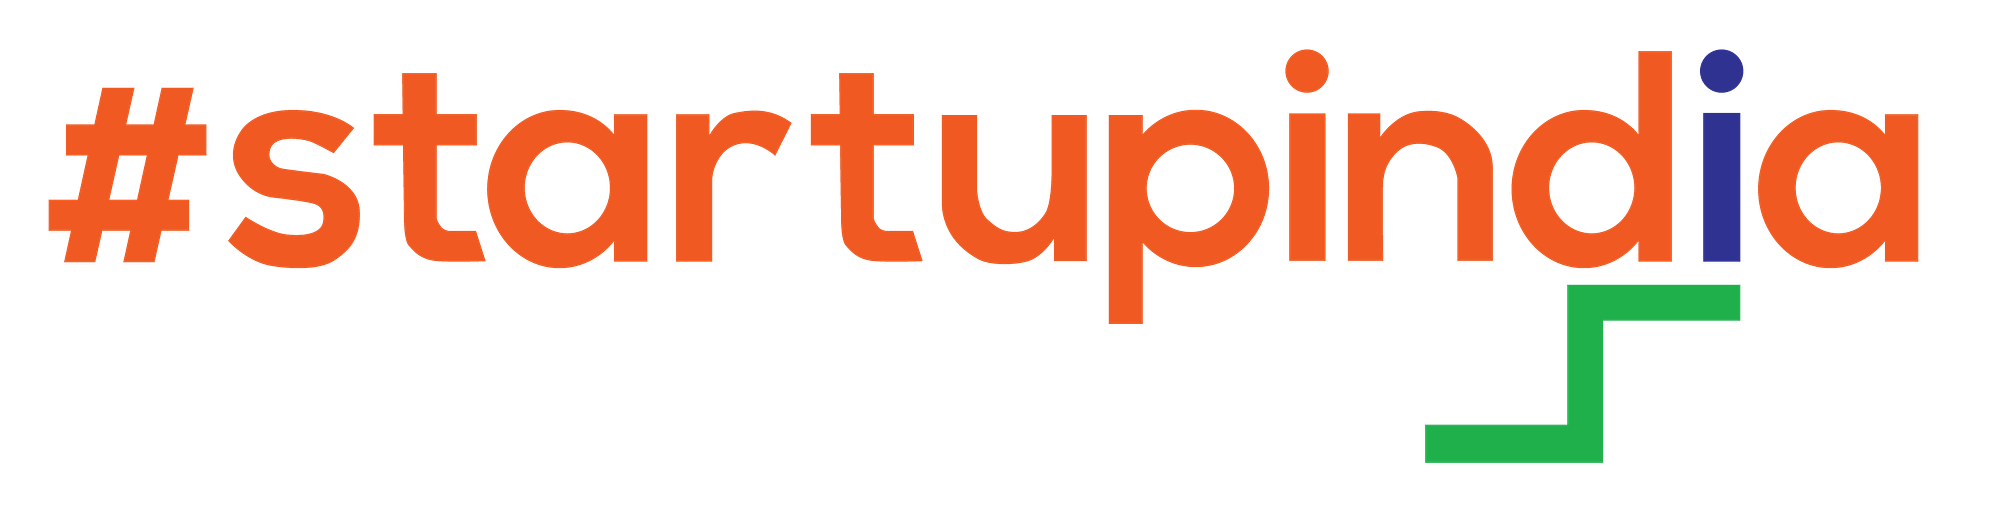 Startup India Logo [Dictum Media]